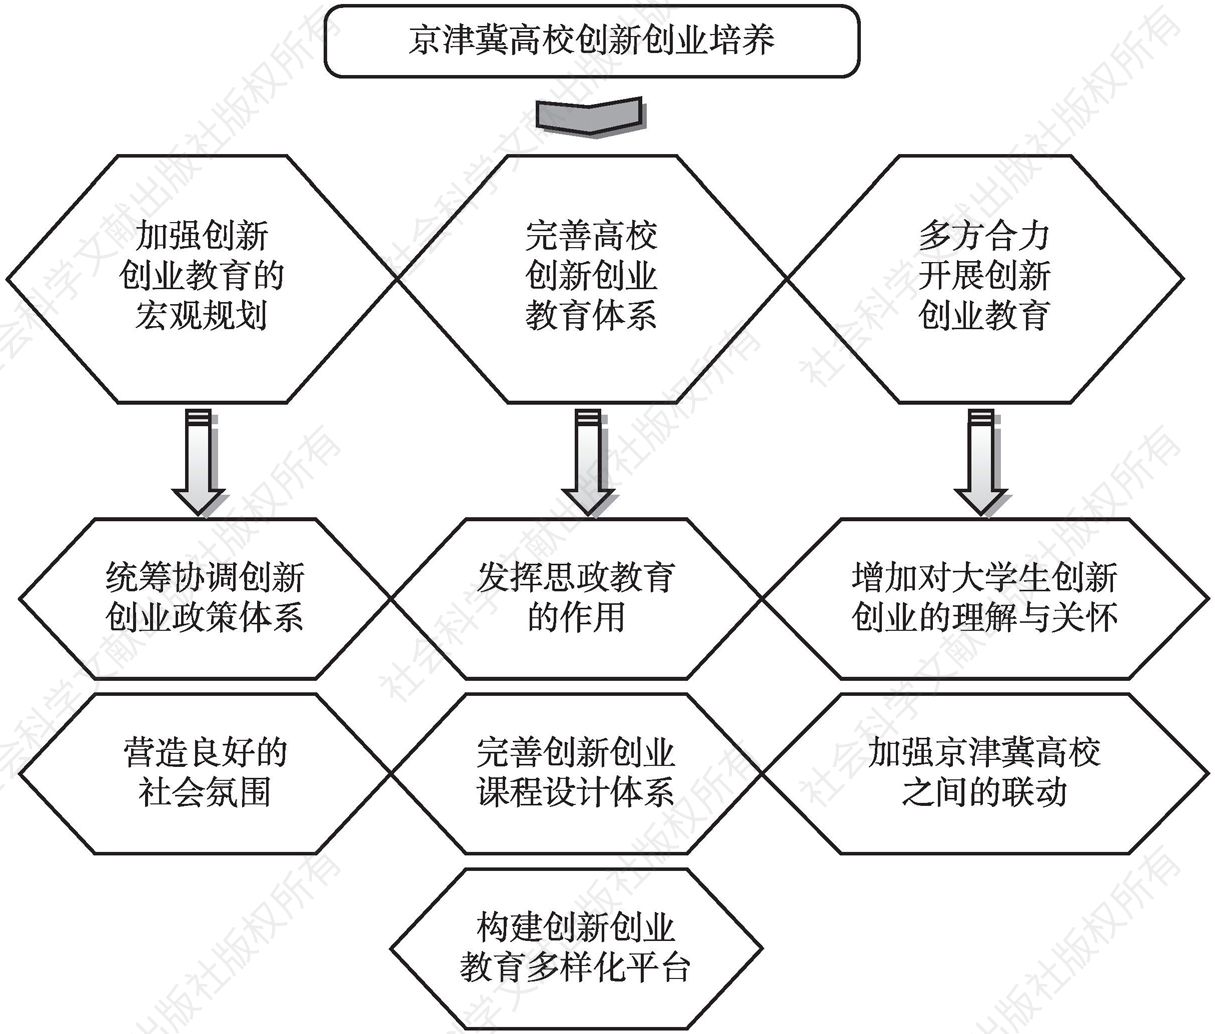 图7 京津冀高校大学生创新创业培养模式